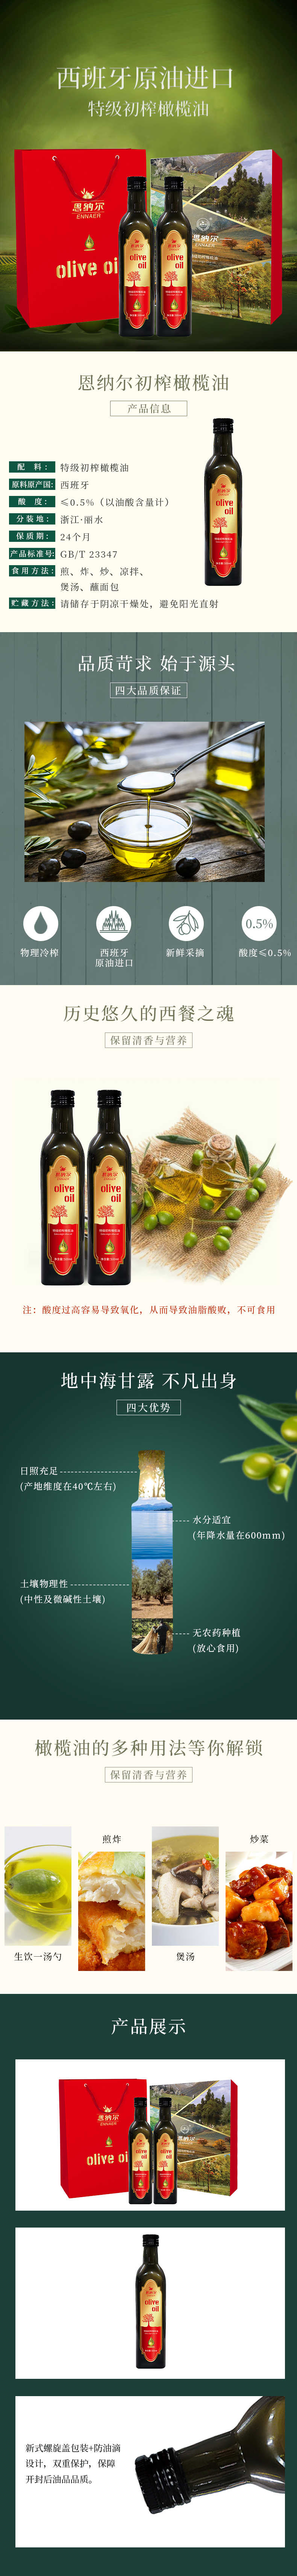 欧尚500ml礼盒橄榄油详情页（红色）.jpg